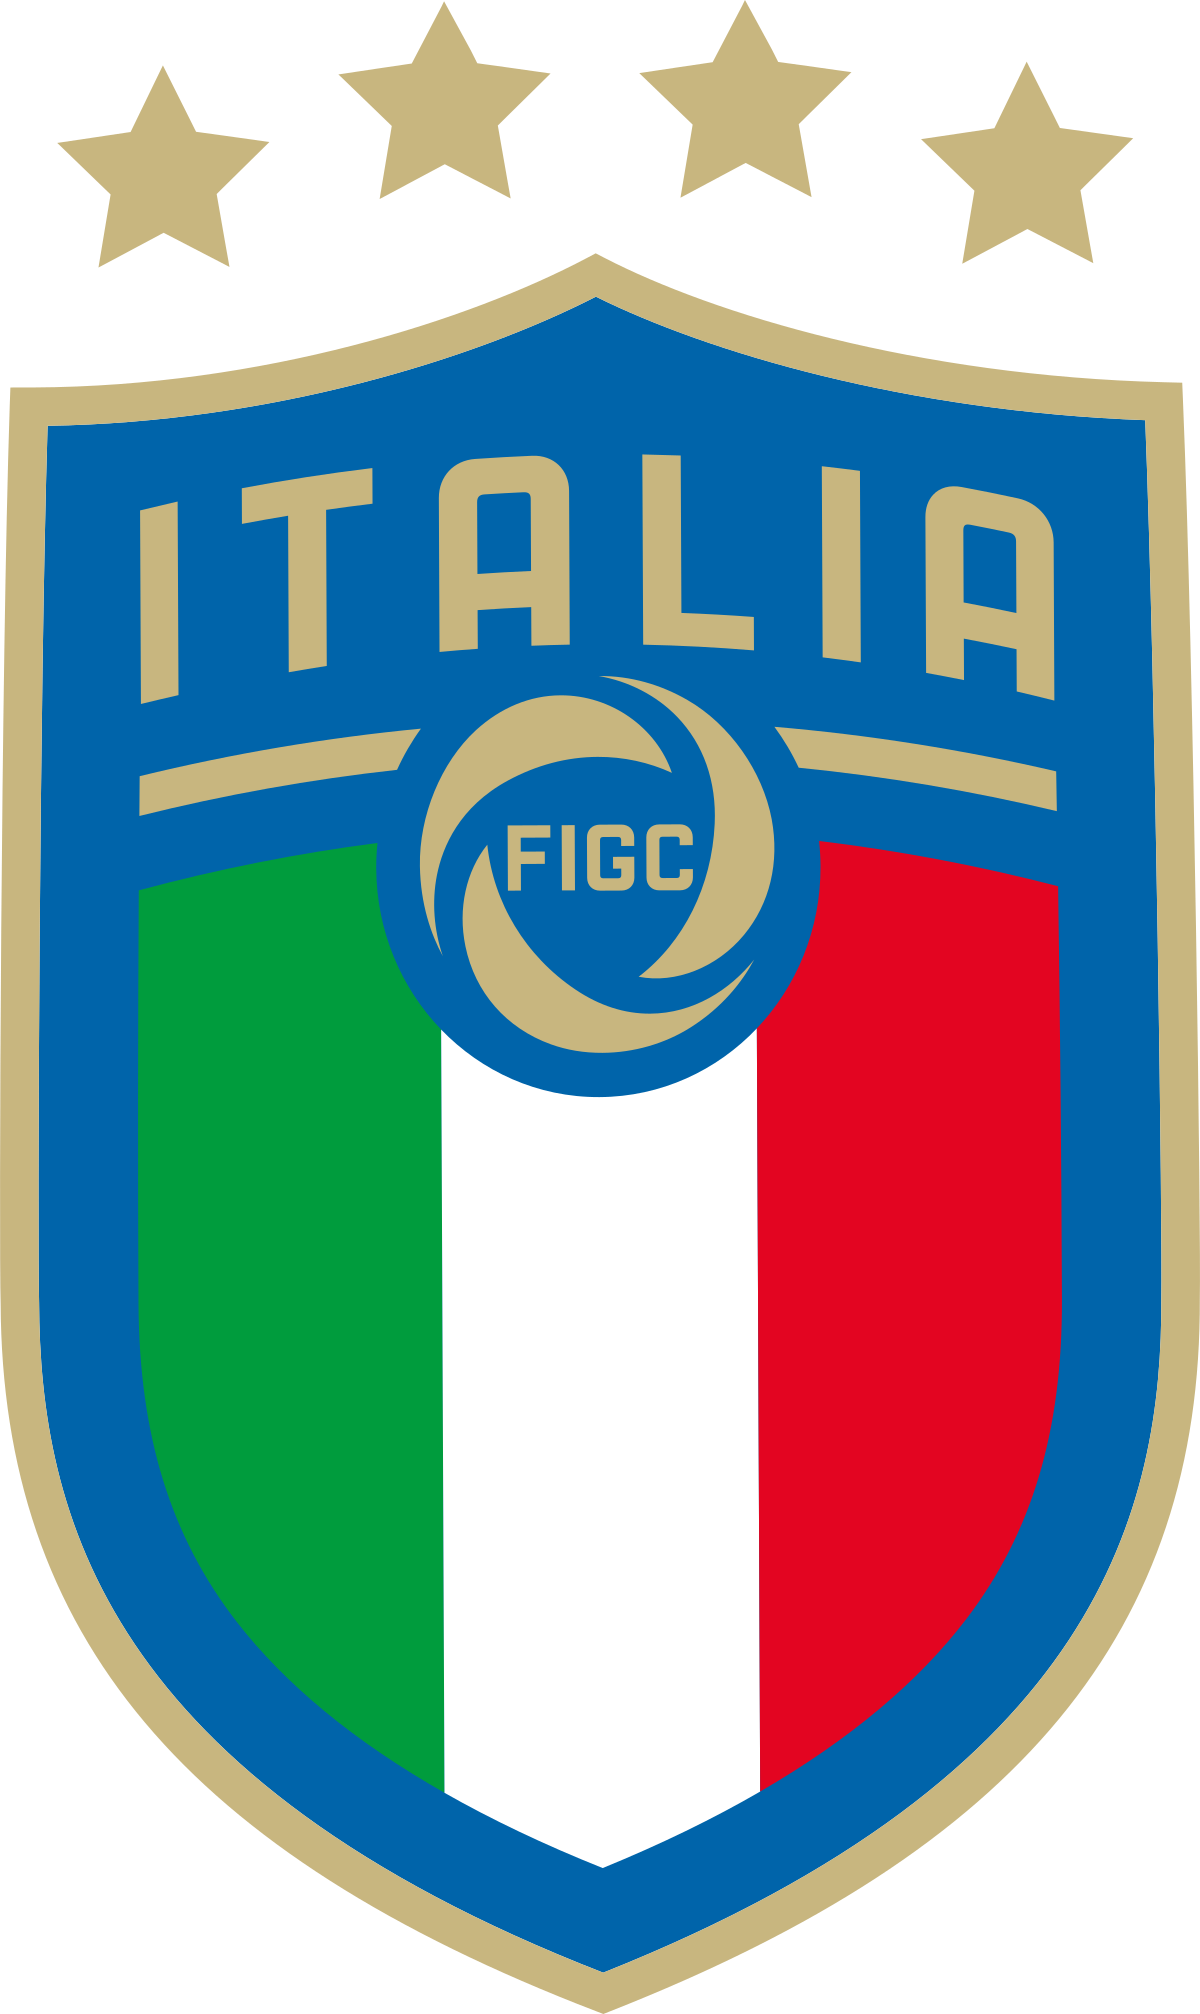 Рейтинг клубных команд итальянской серии а по футболу